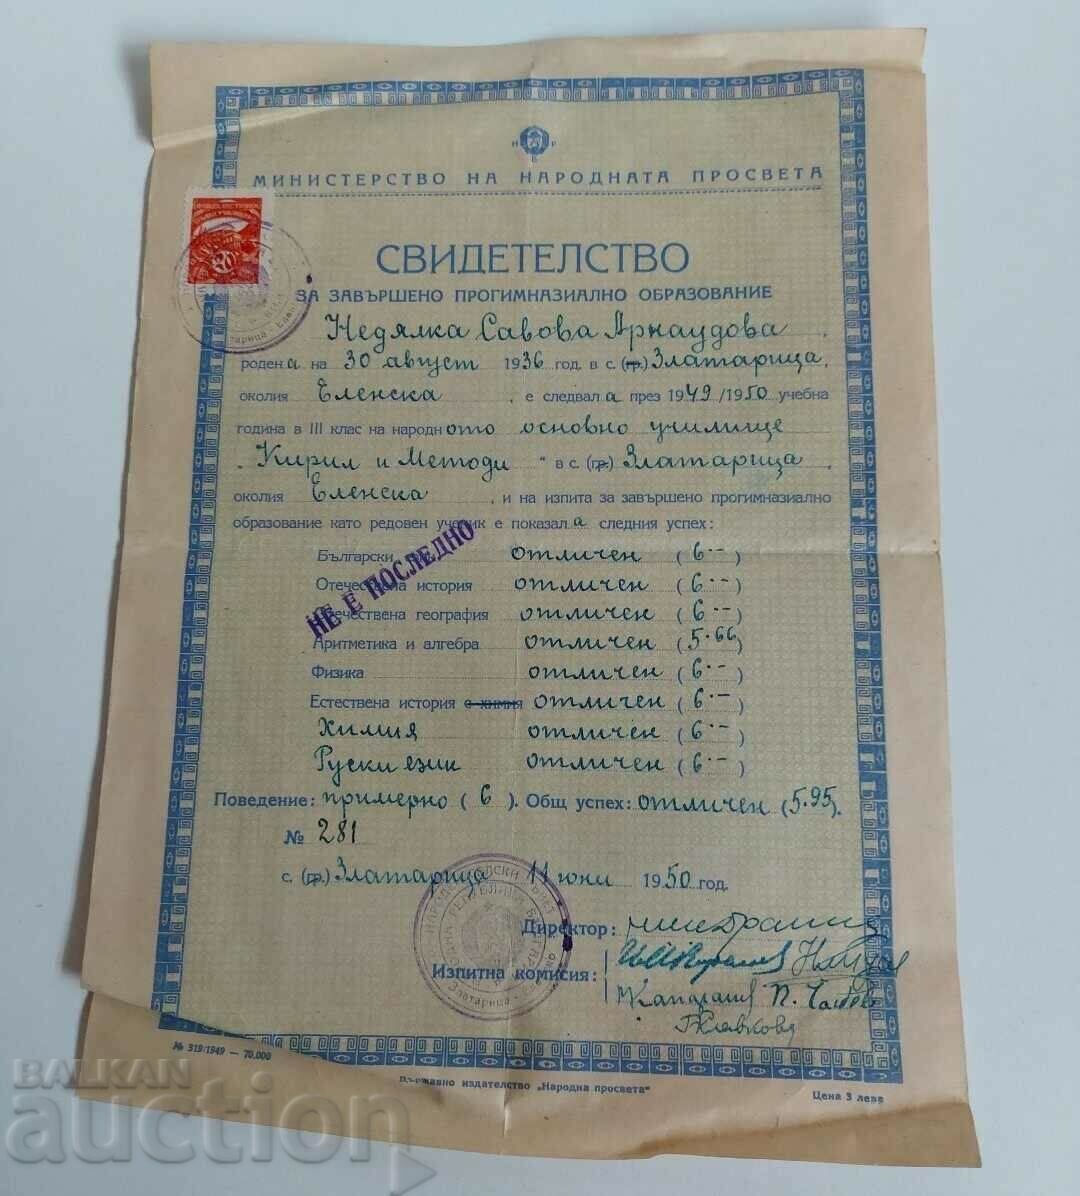 1950 CERTIFICAT DE ÎNVĂȚĂMÂNT DE LICENȚĂ DOCUMENT DE TIMBĂ